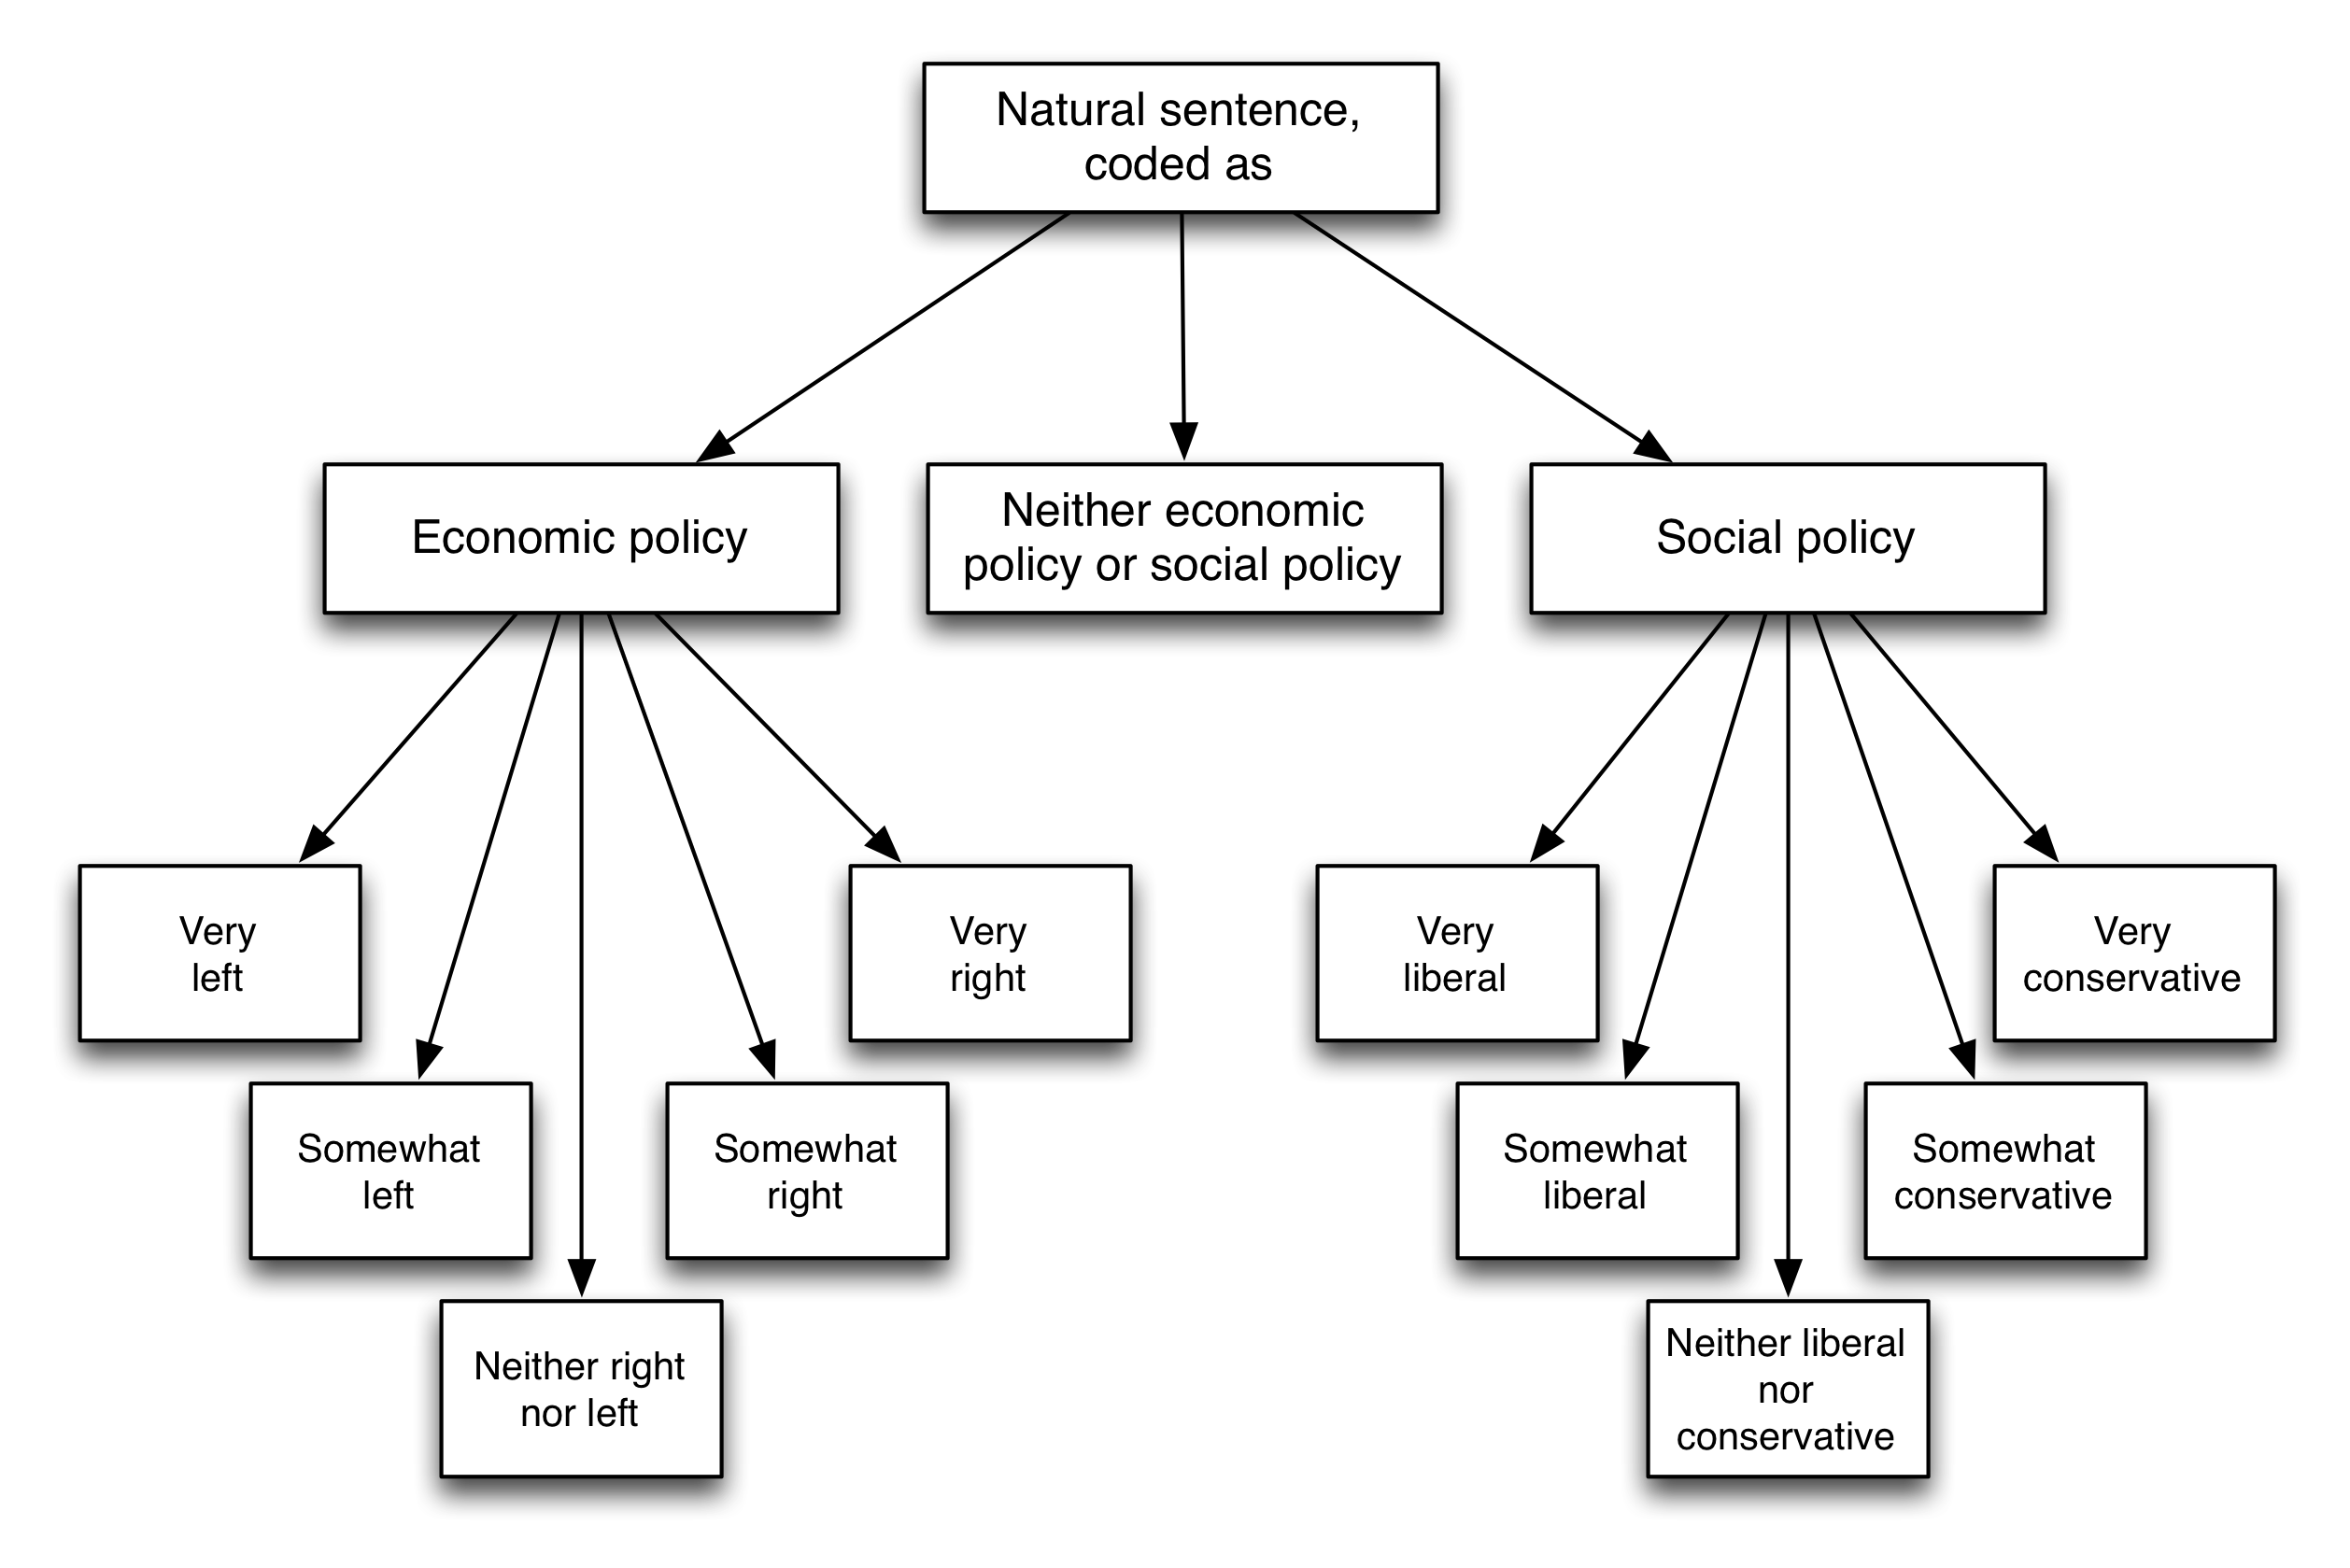 Figura 5.5: Esquema de codificação de Benoit et al. (2016). Pediu-se aos leitores que classificassem cada sentença como referindo-se à política econômica (esquerda ou direita), à política social (liberal ou conservadora) ou a nenhuma delas. Adaptado de Benoit et al. (2016), figura 1.